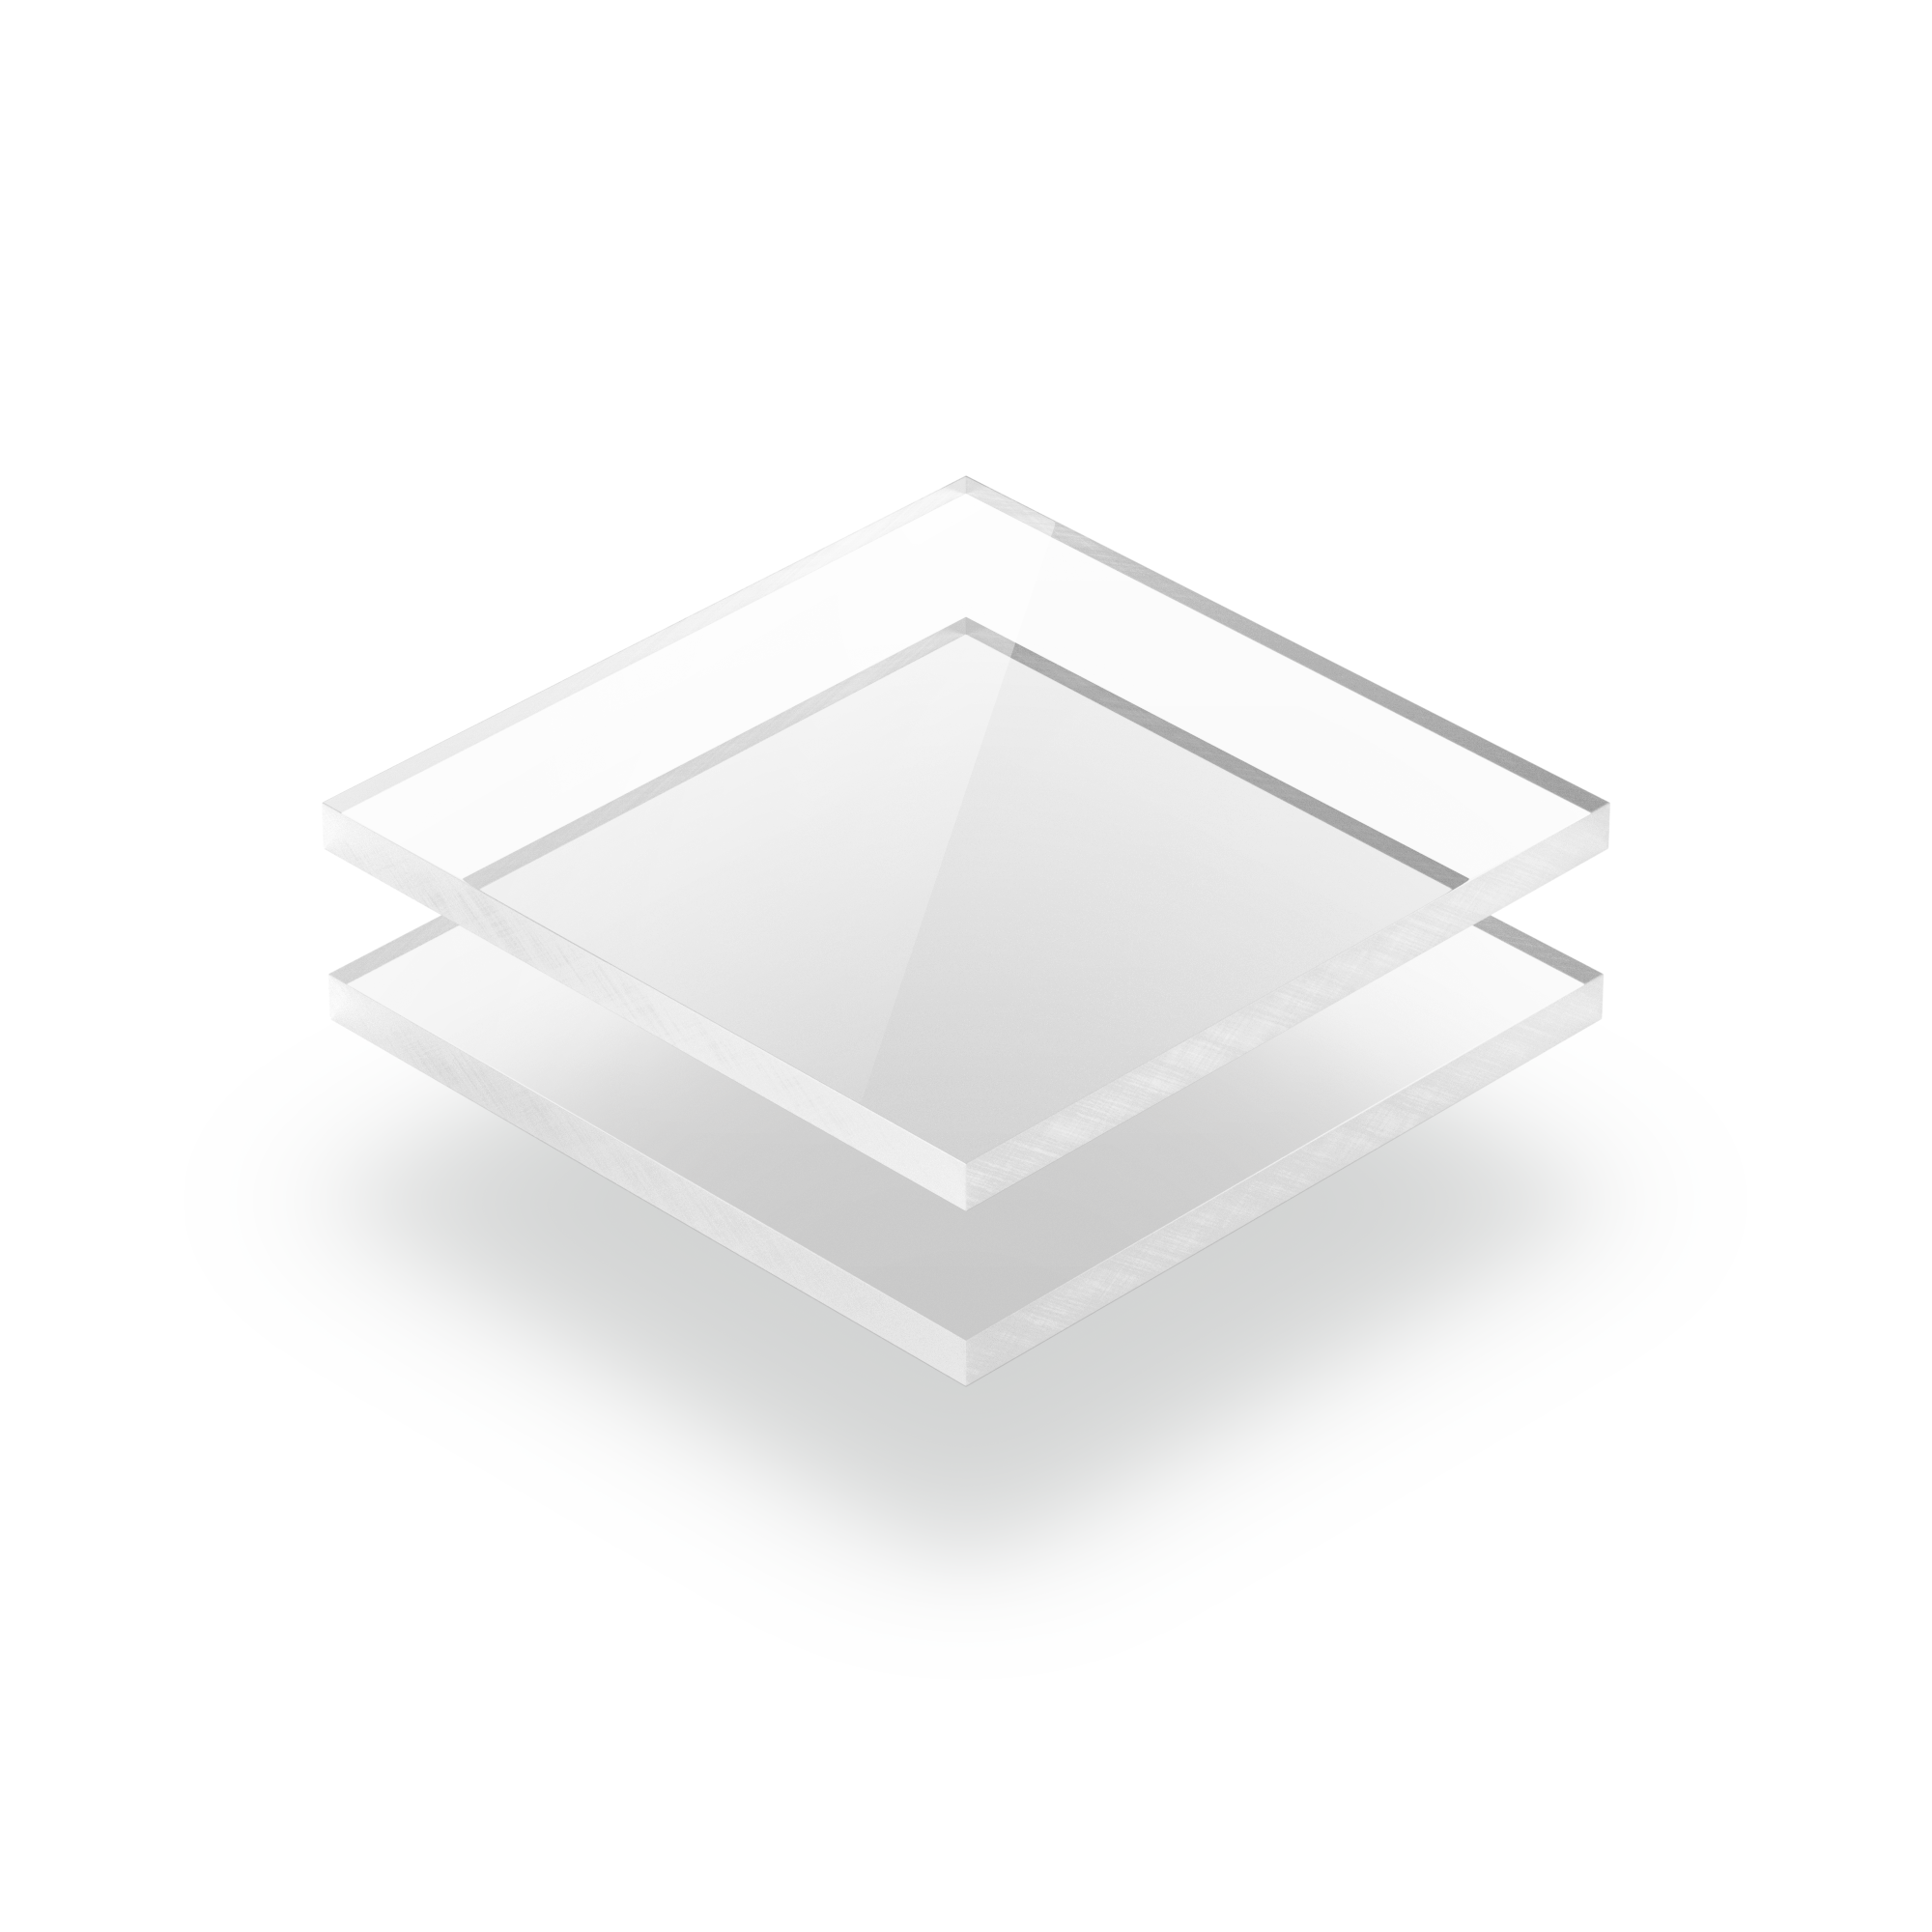 Plaque polycarbonate transparent au meilleur prix